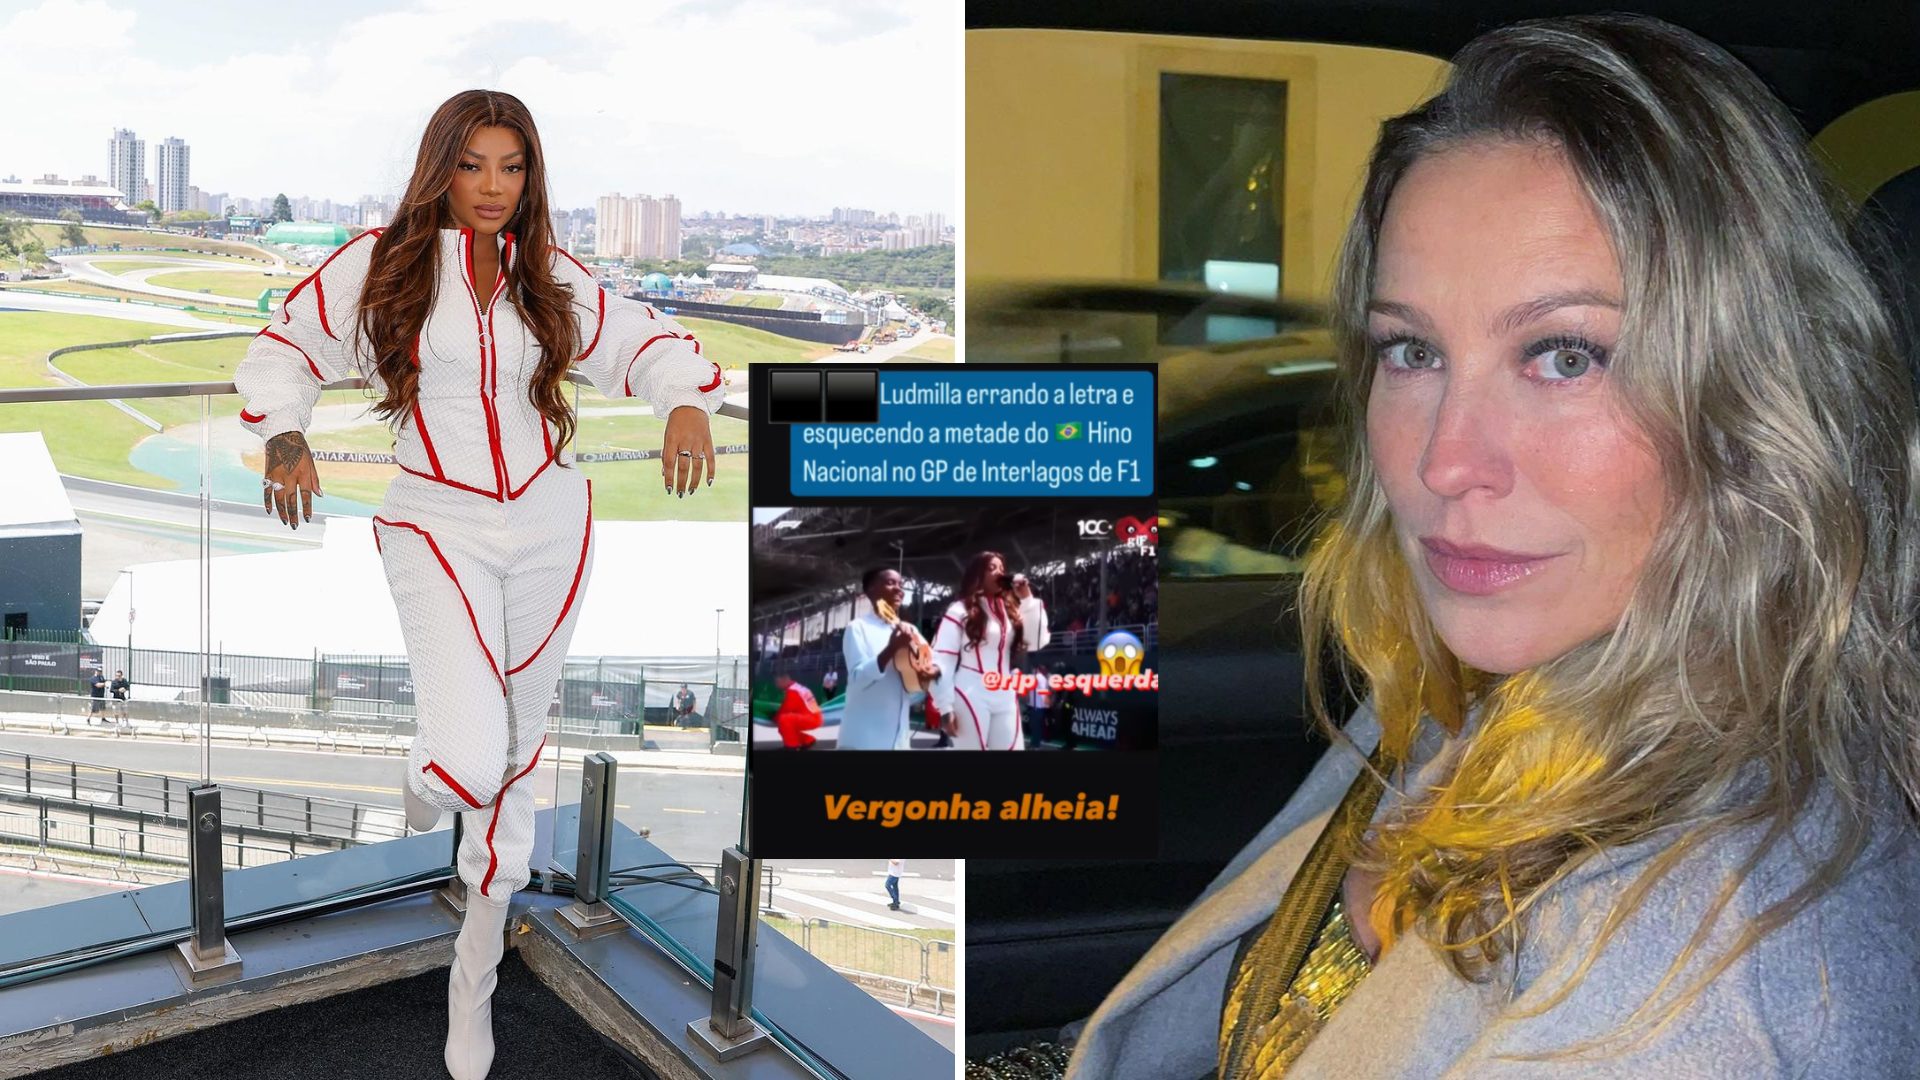 'Vergonha alheia' Piovani posta vídeo em que Ludmilla parece esquecer hino